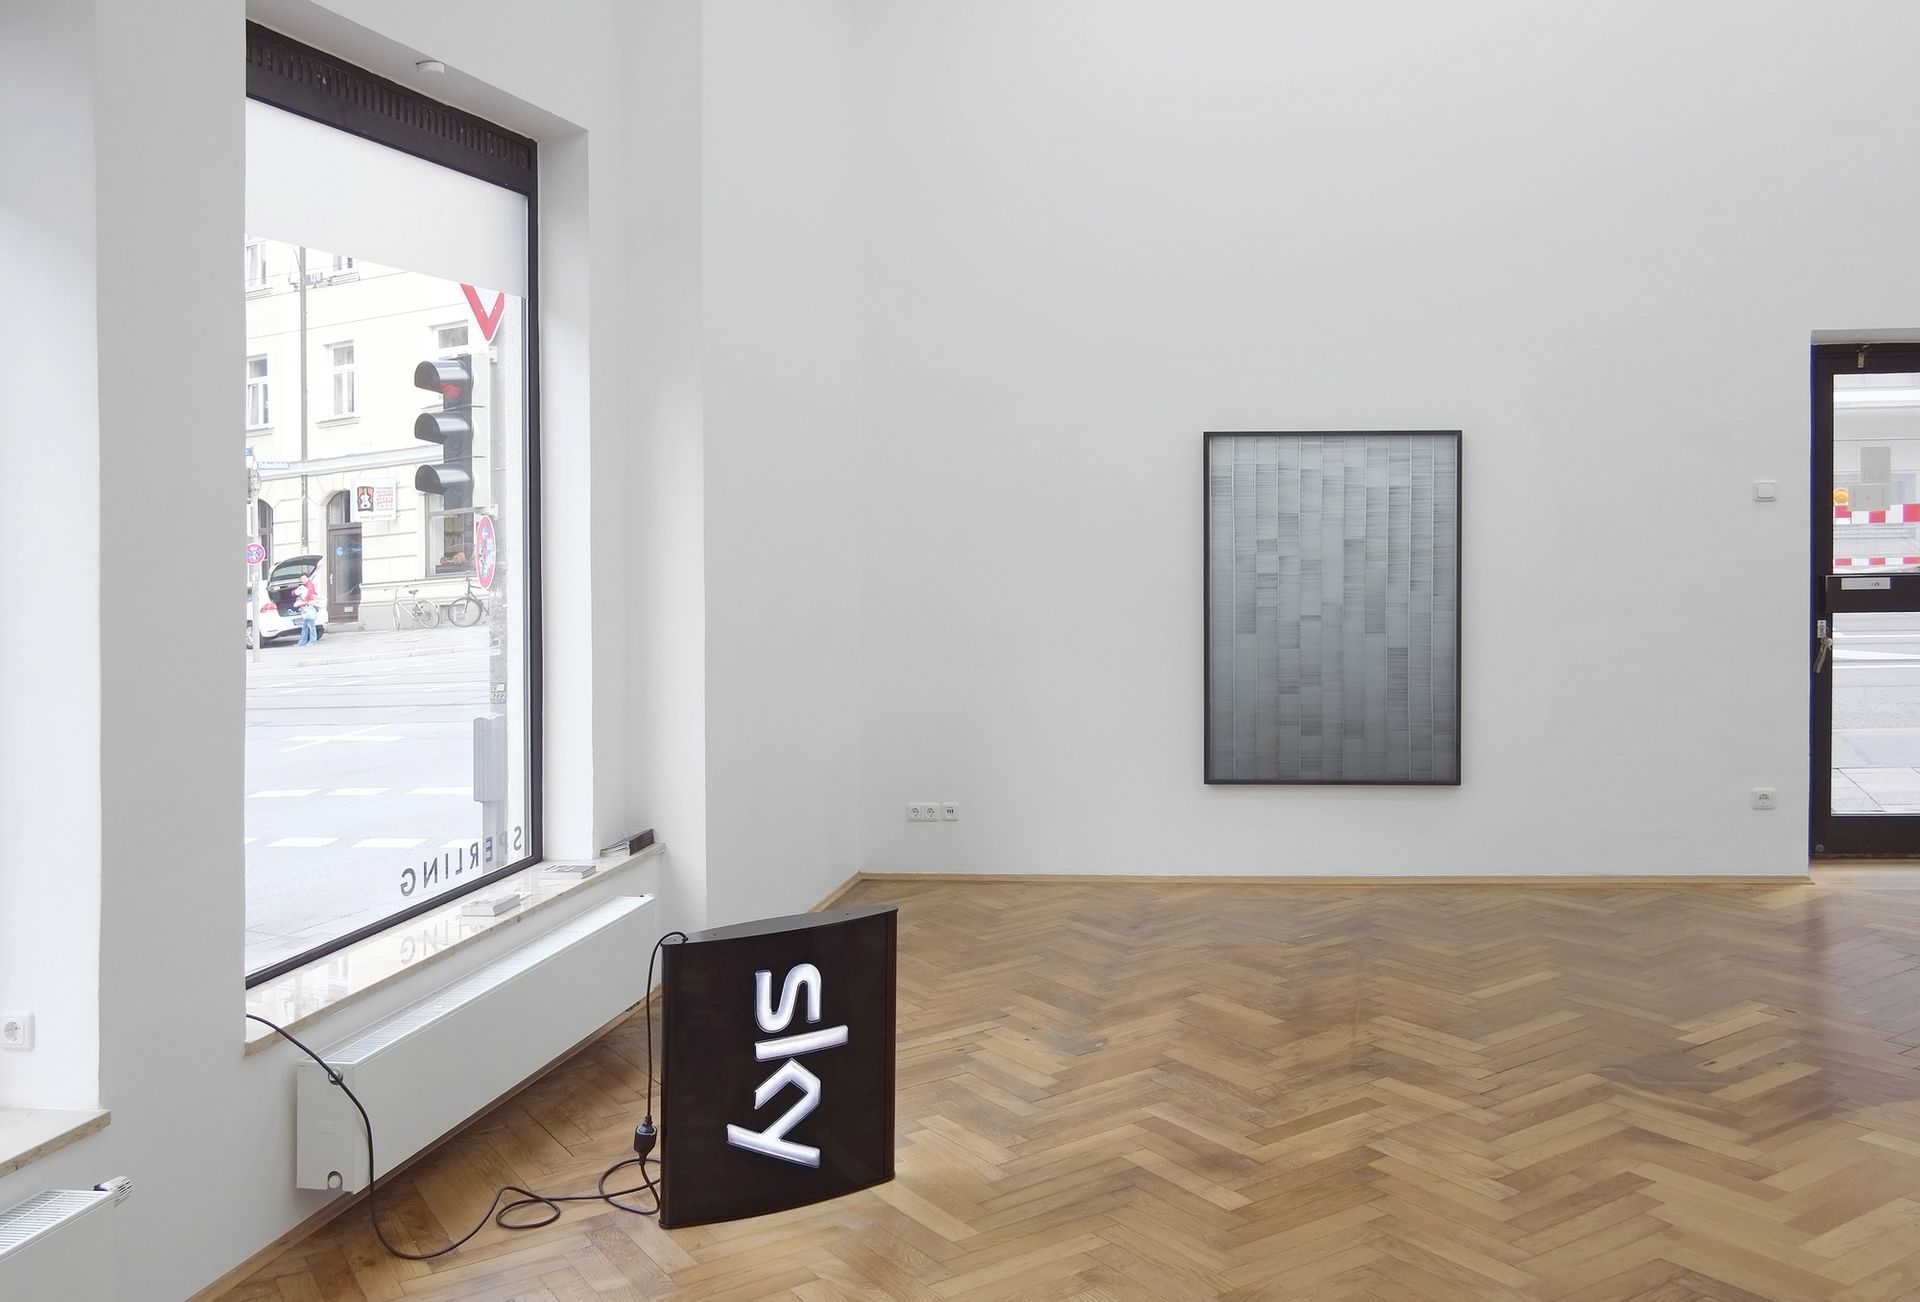 Installation view: “Alex Grein ∩ Anna Vogel”, 2015